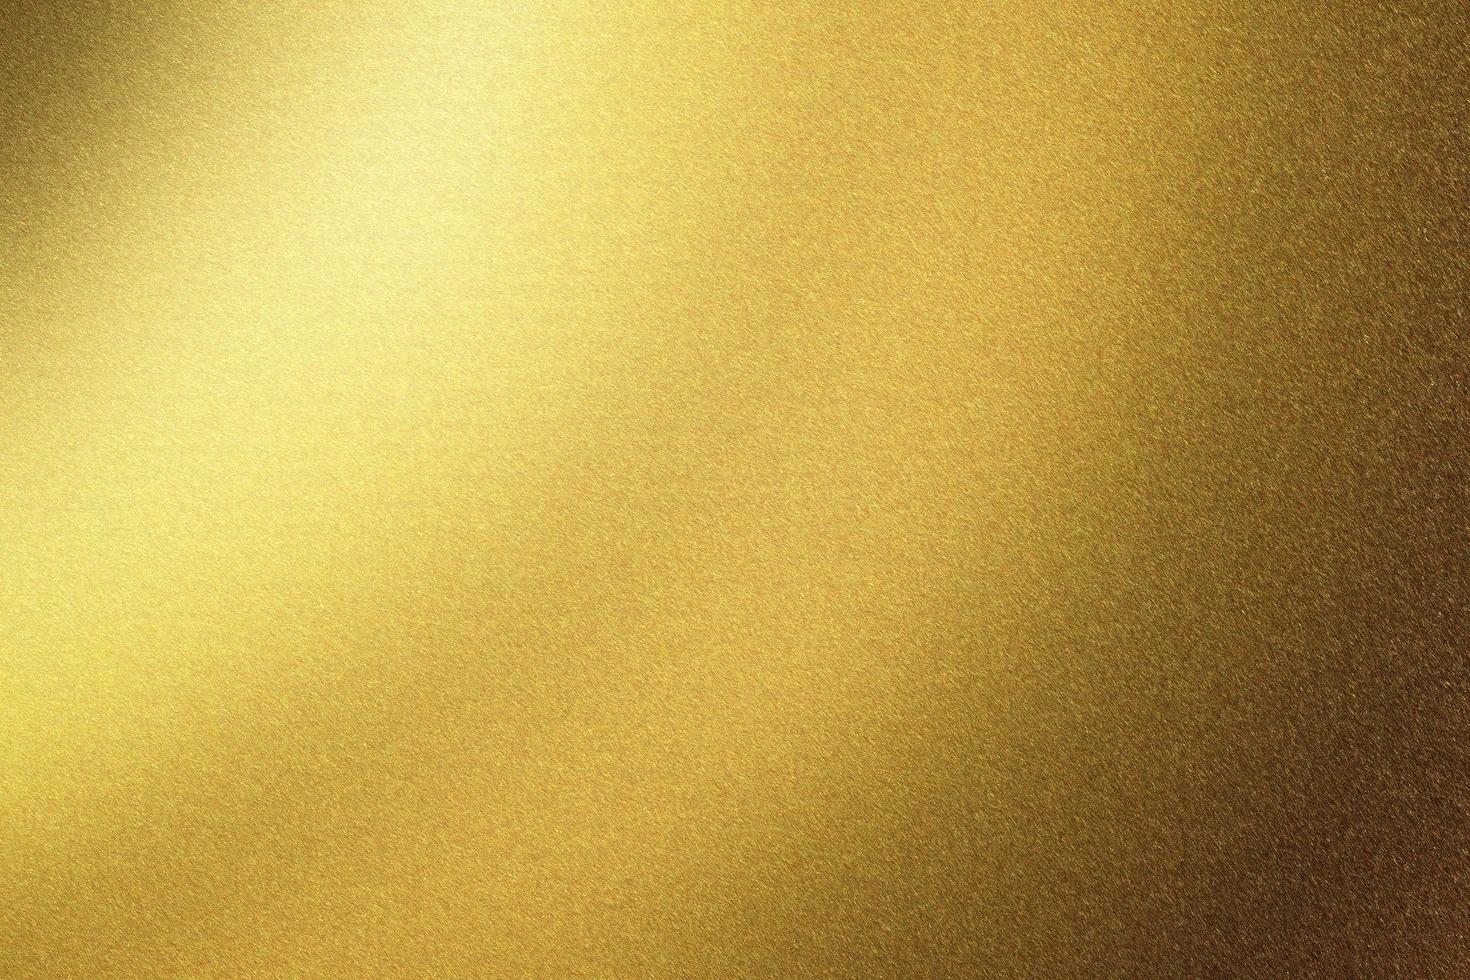 mur en acier doré brillant brossé, fond de texture abstraite photo